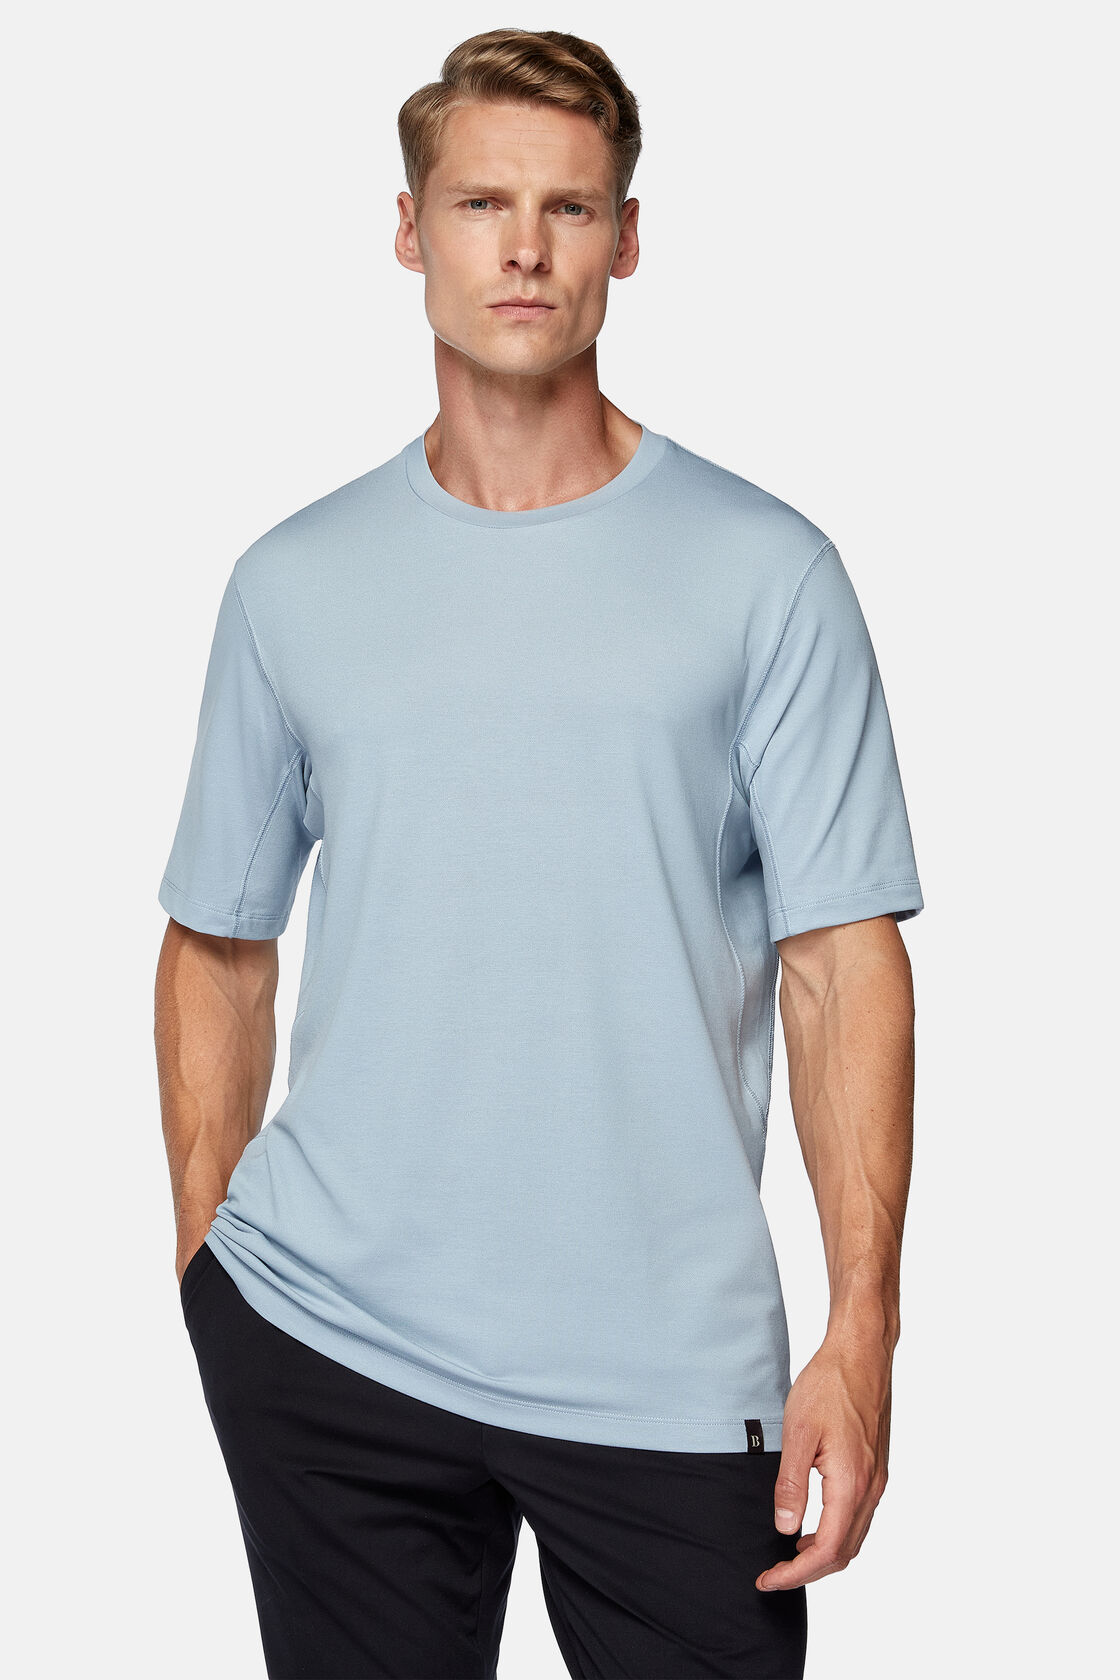 Πικέ μπλουζάκι πόλο υψηλών επιδόσεων, Light Blue, hi-res